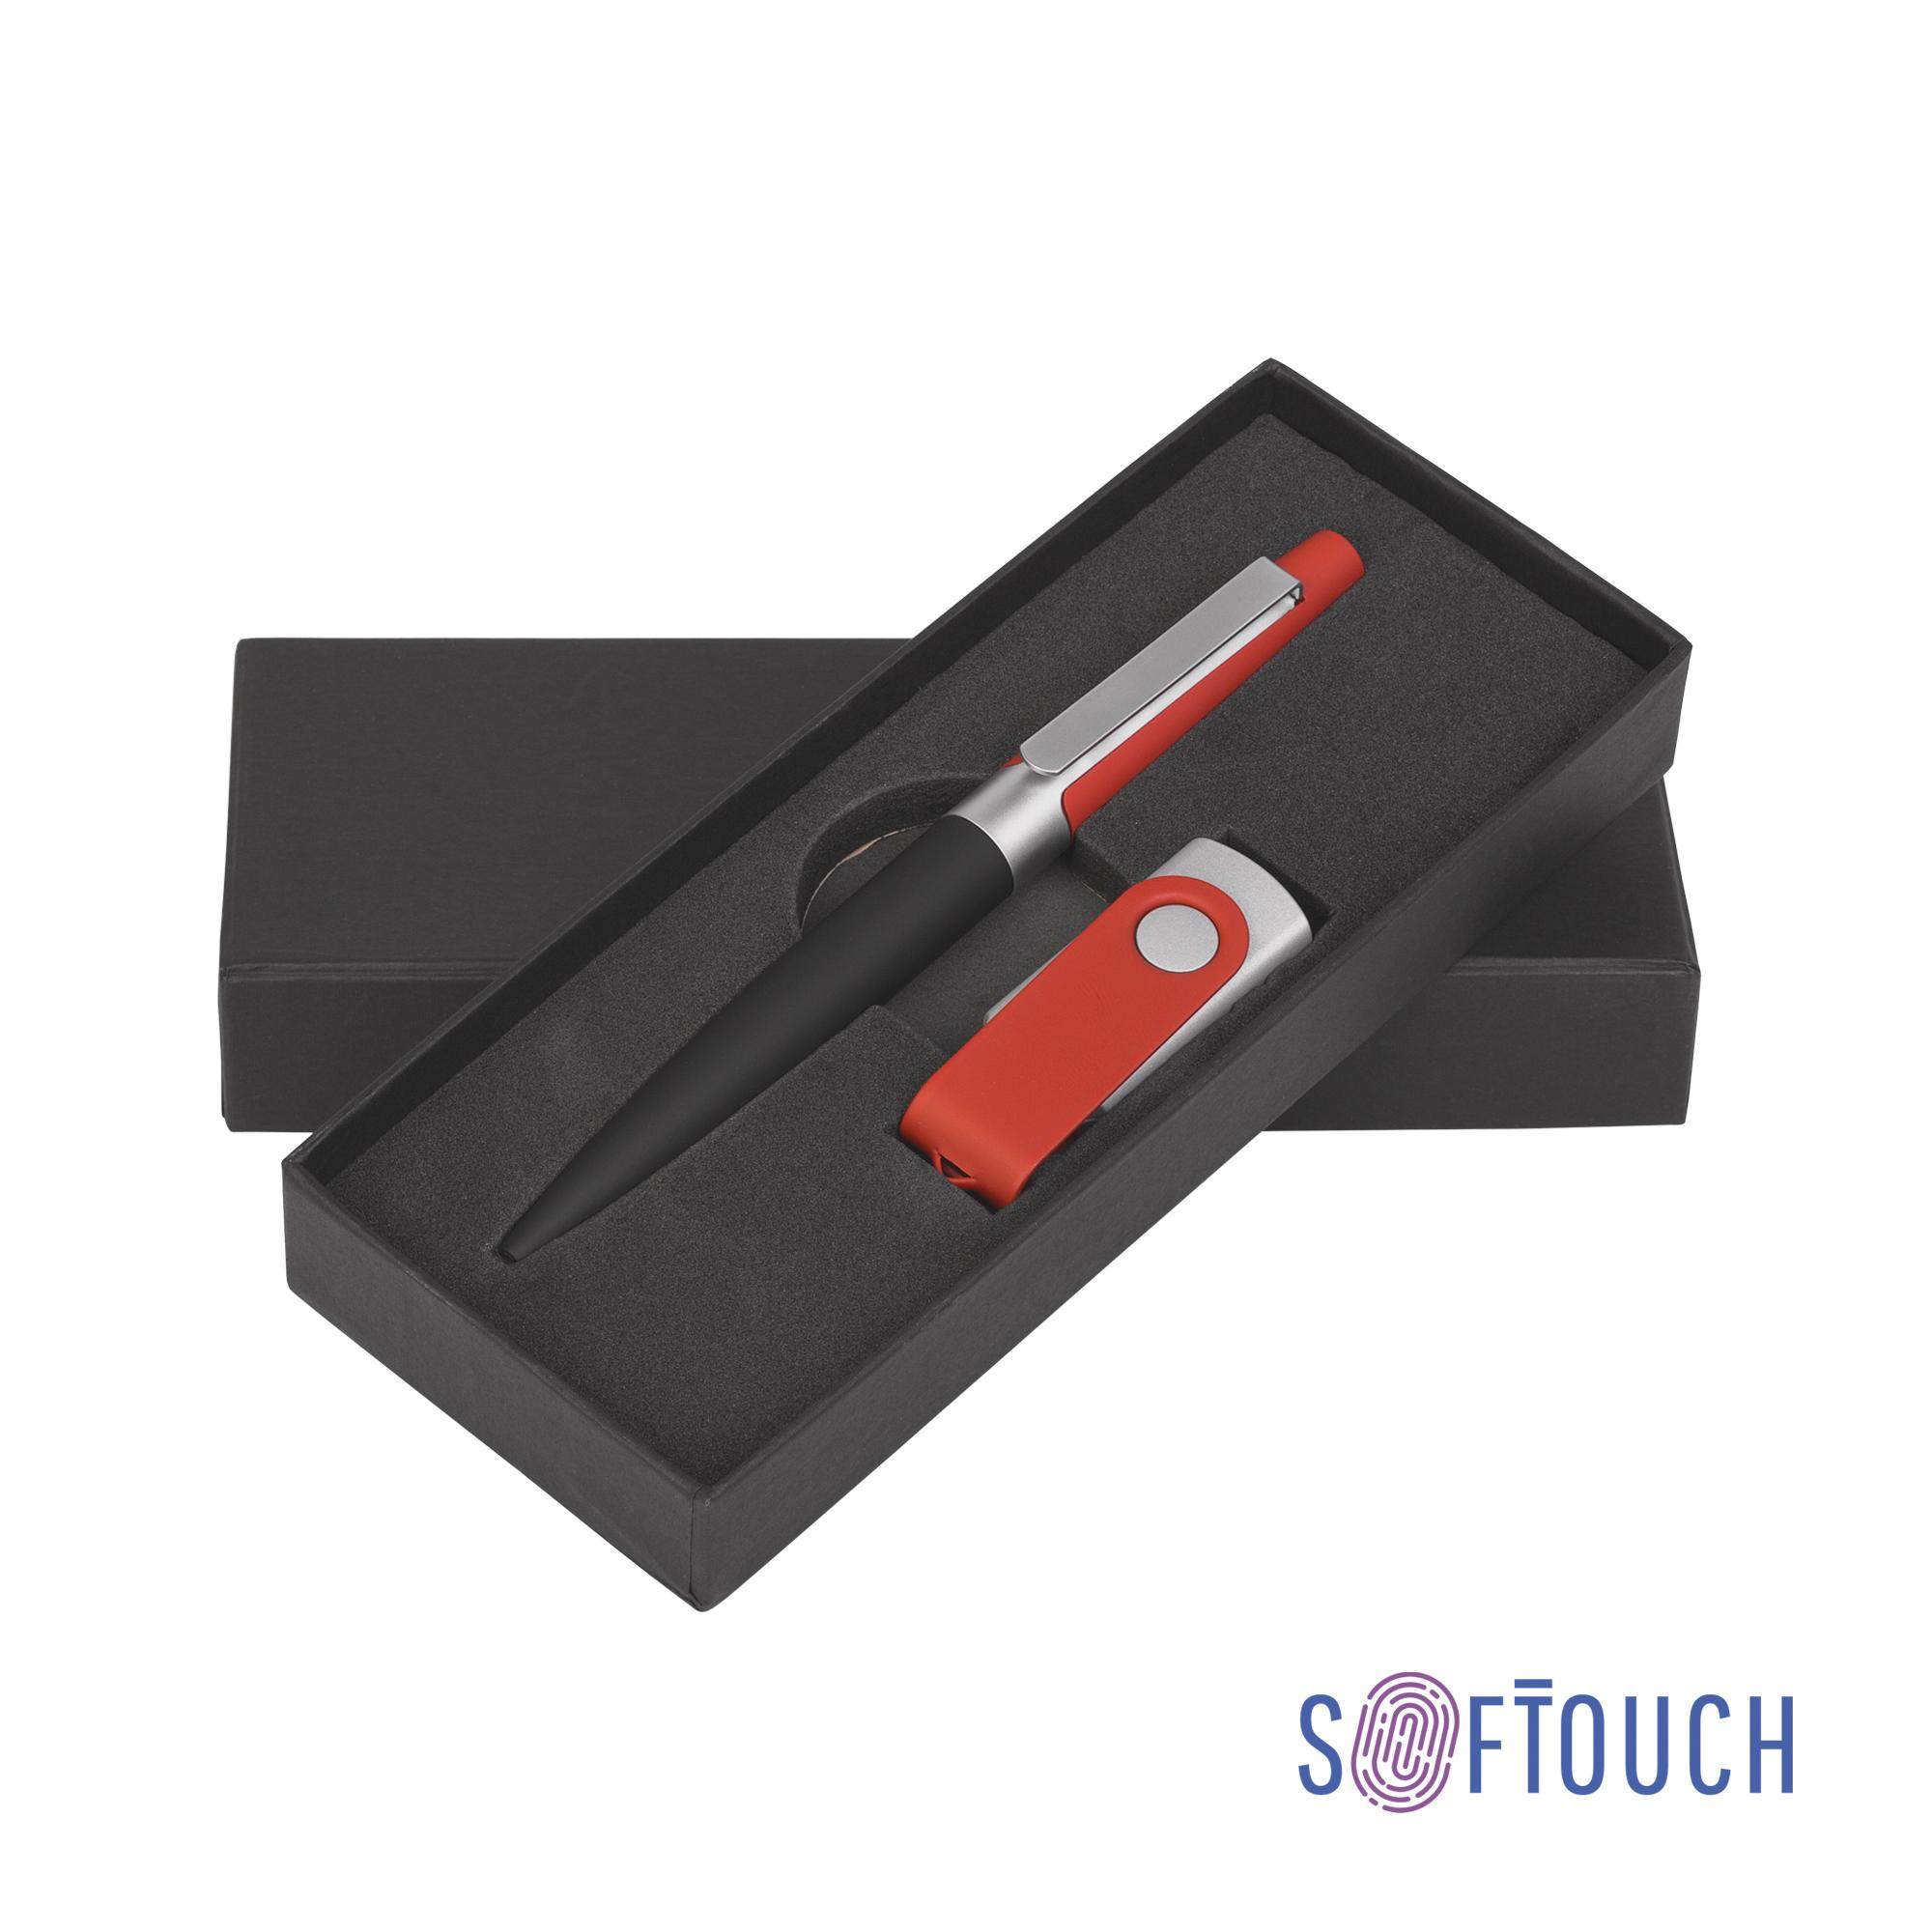 Набор ручка + флеш-карта 8 Гб в футляре, черный/желтый, покрытие soft touch #, цвет красный с черным